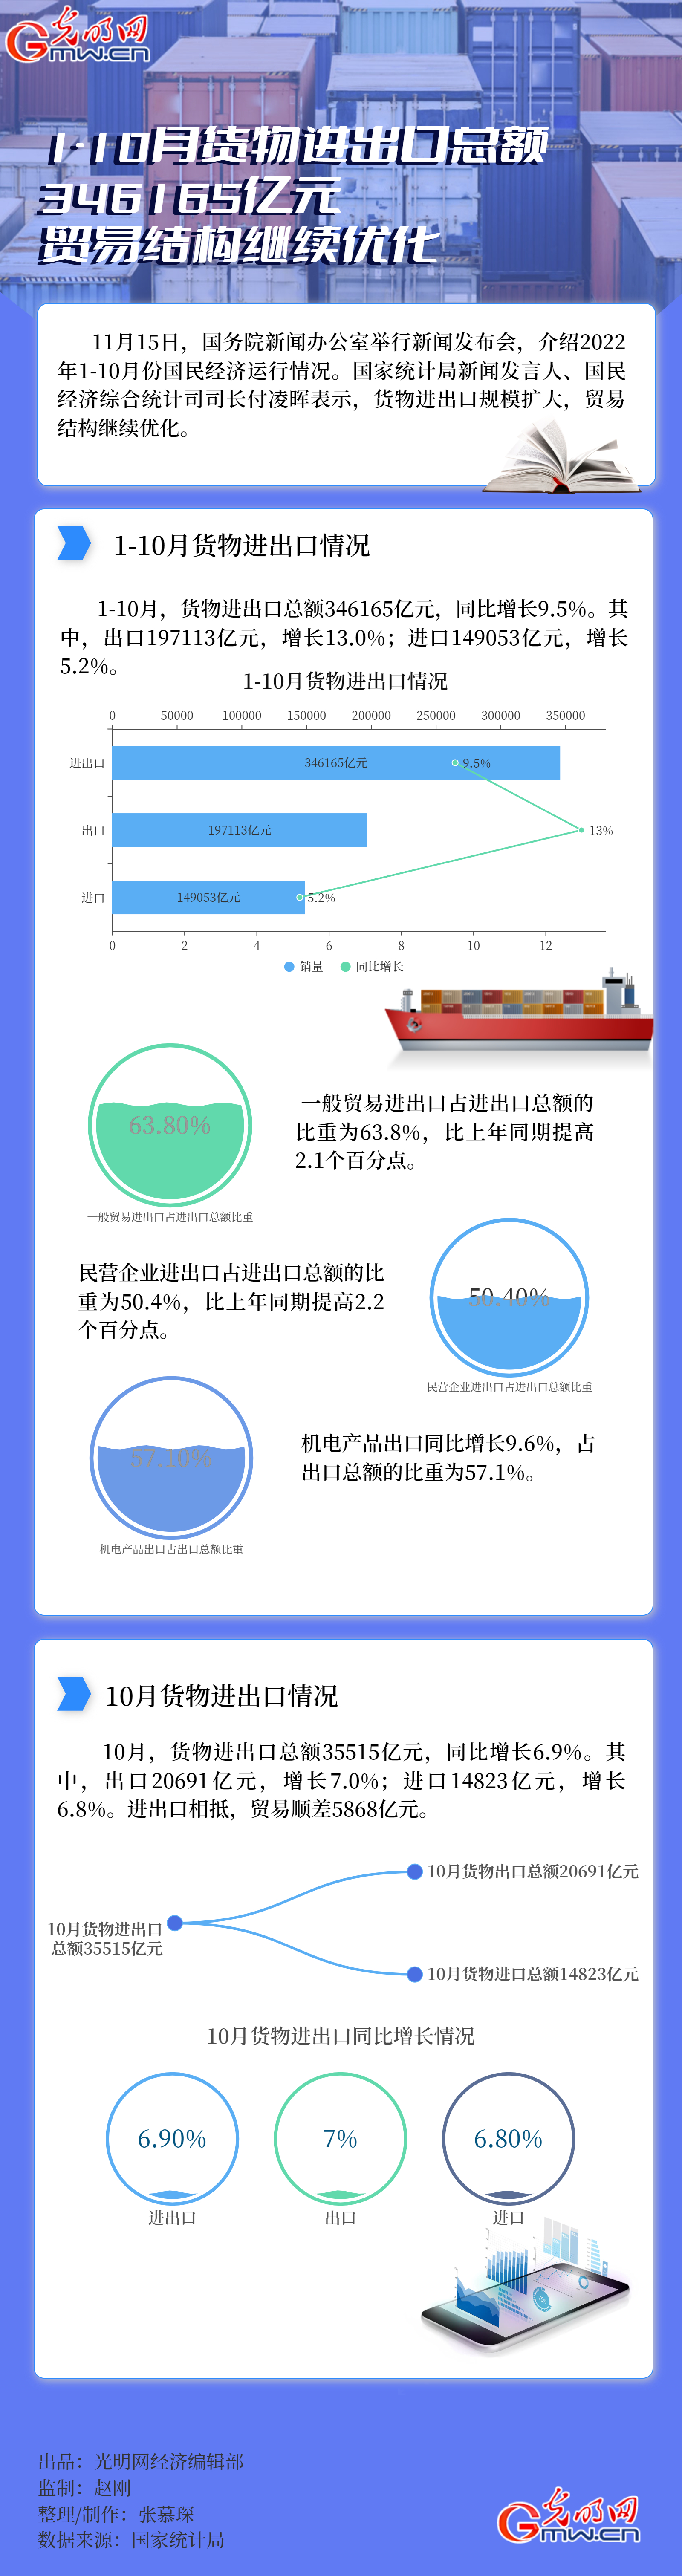 数据图解|1-10月货物进出口总额346165亿元 贸易结构继续优化